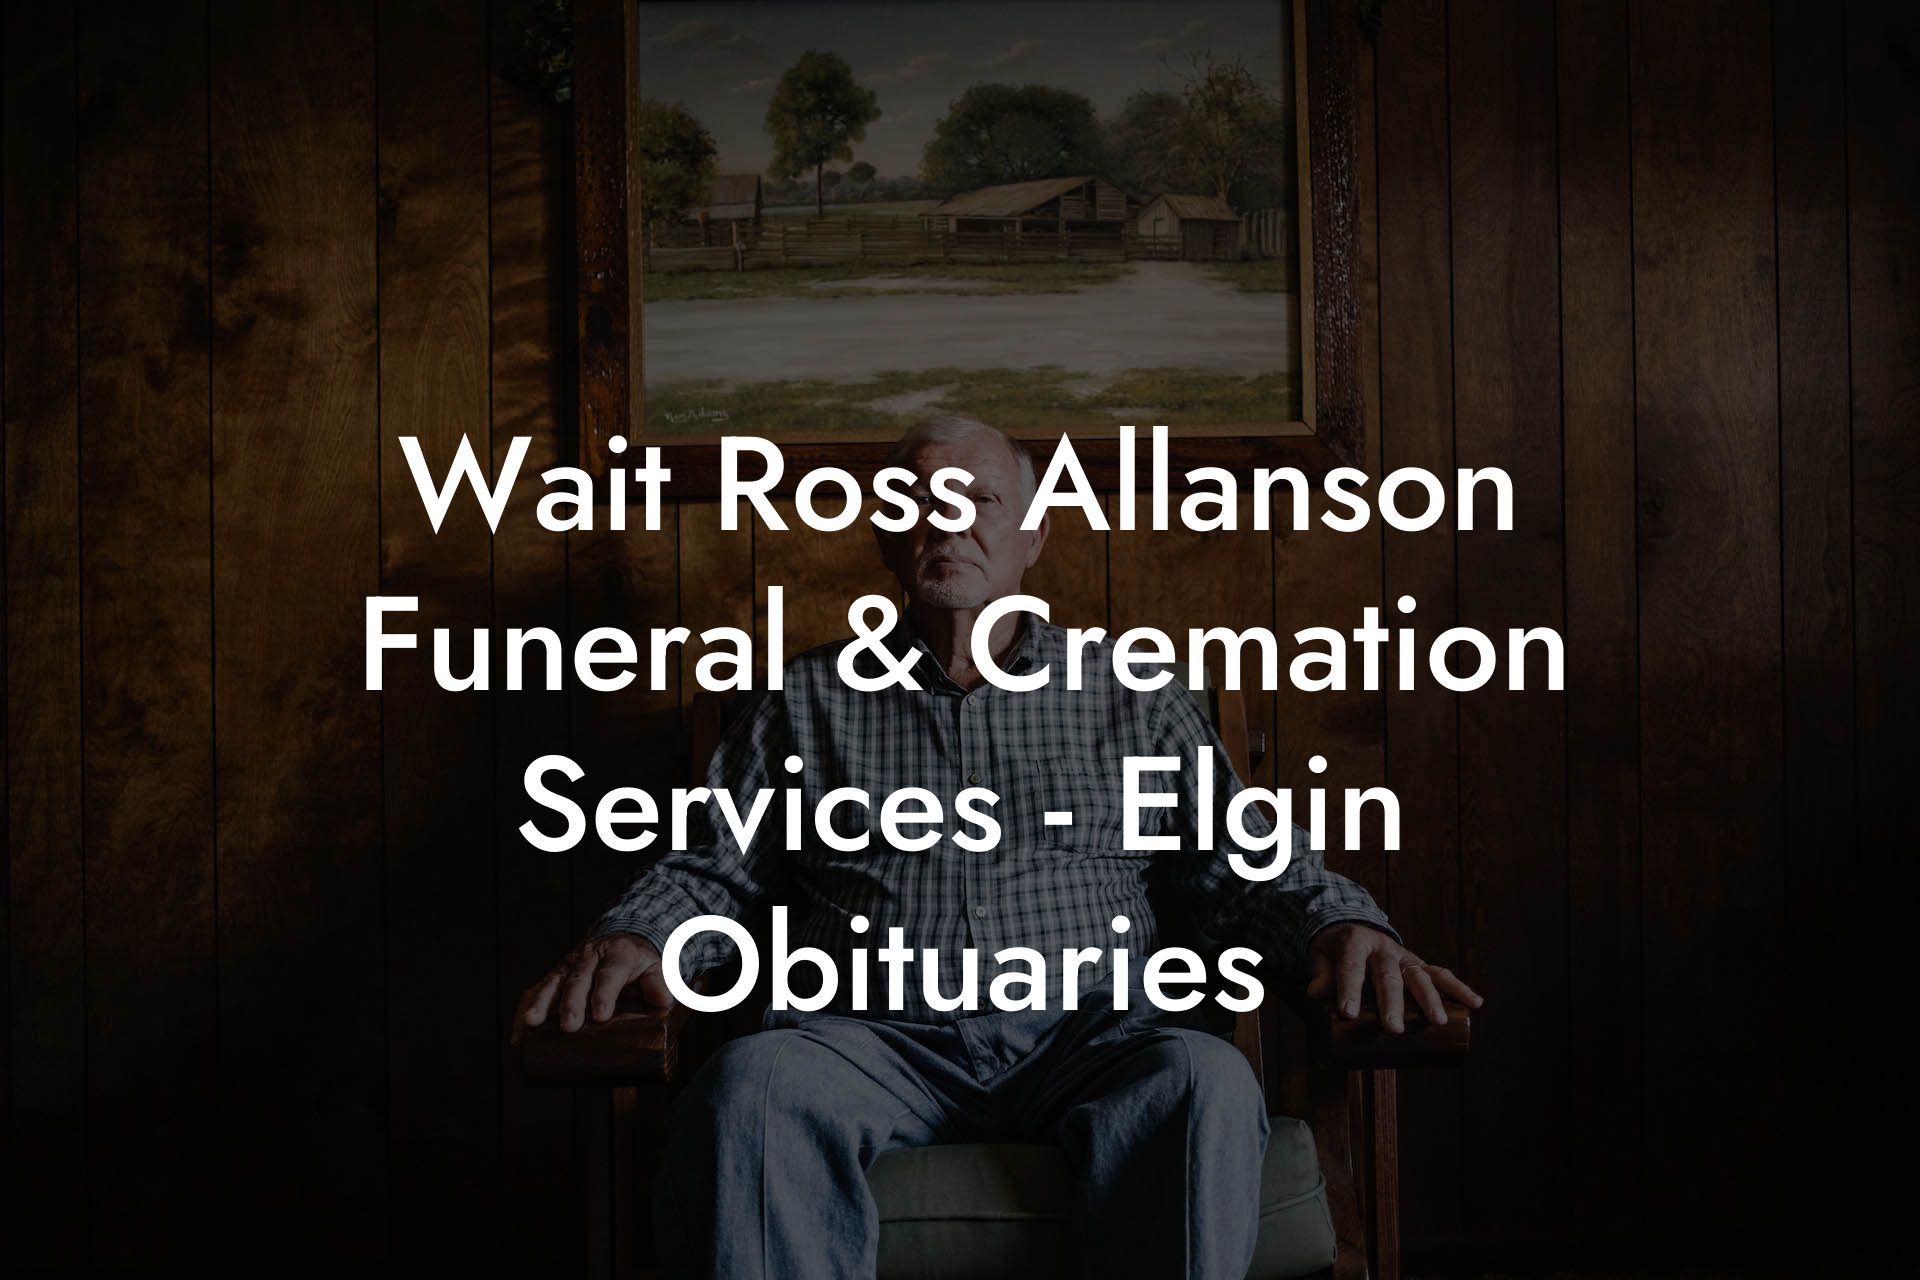 Wait Ross Allanson Funeral & Cremation Services - Elgin Obituaries